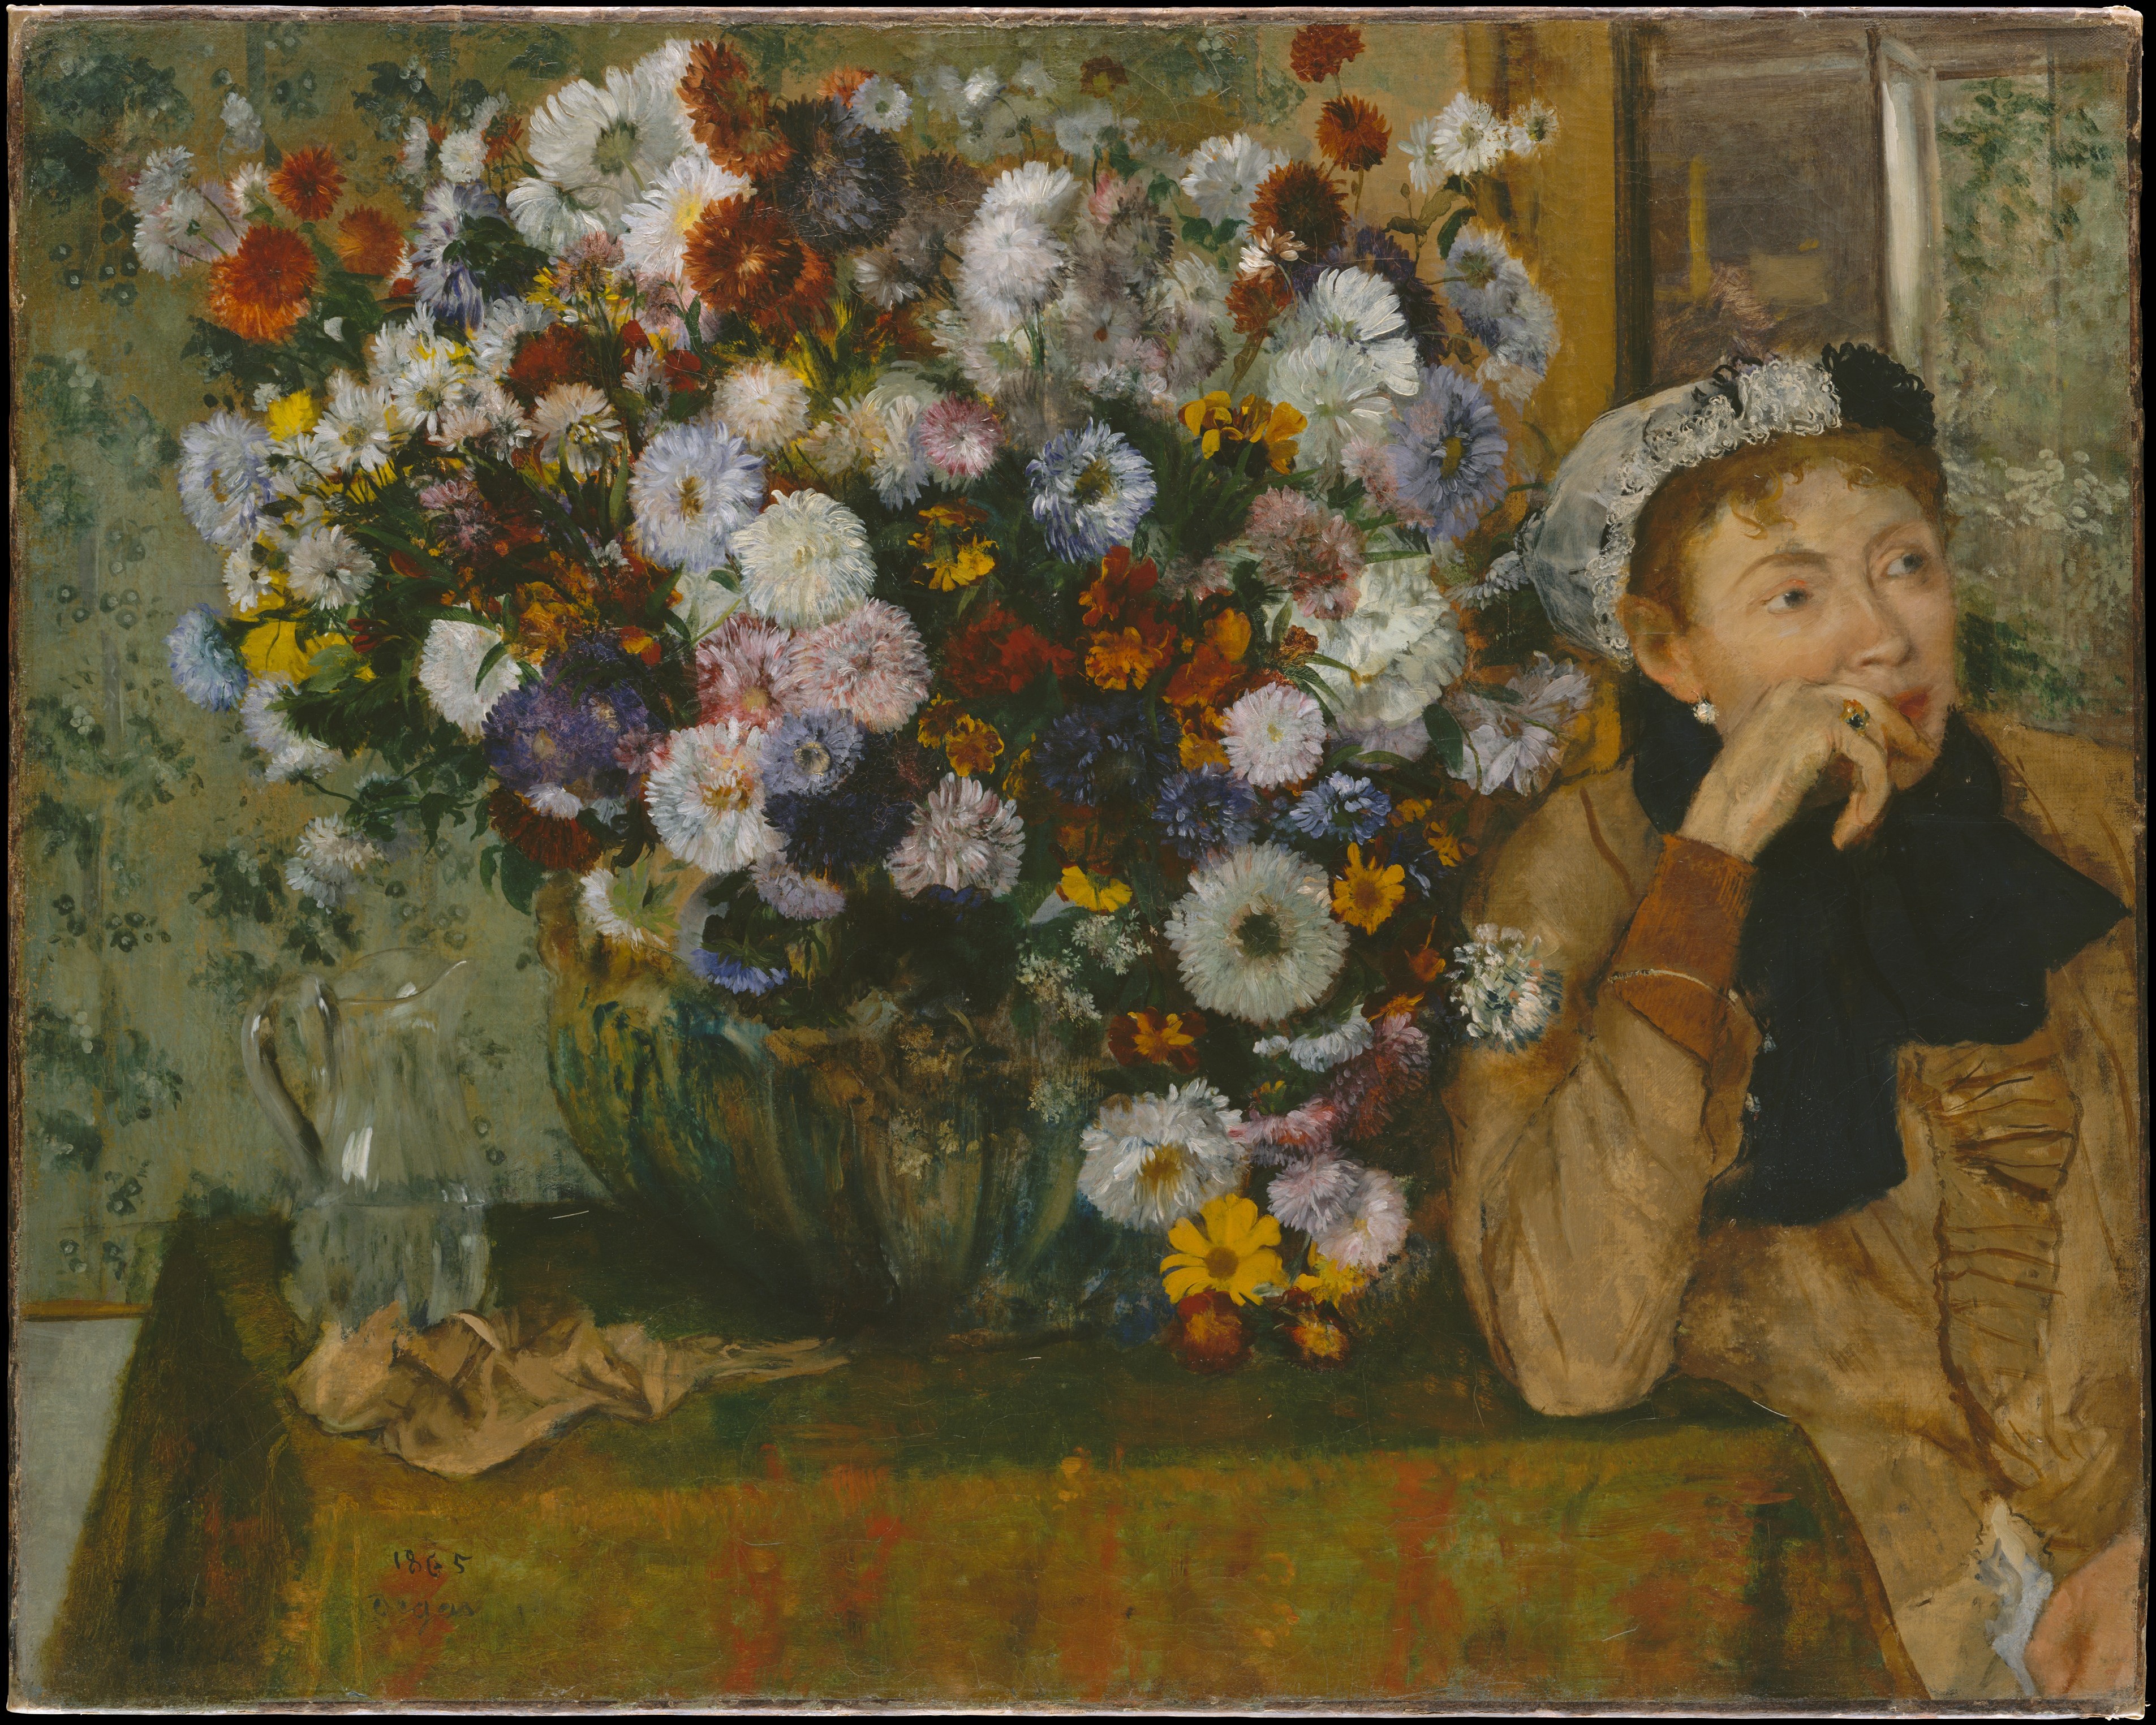 화병 옆에 앉은 여인(폴 발팽송 부인?) by Edgar Degas - 1865 - 73.7 x 92.7 cm 